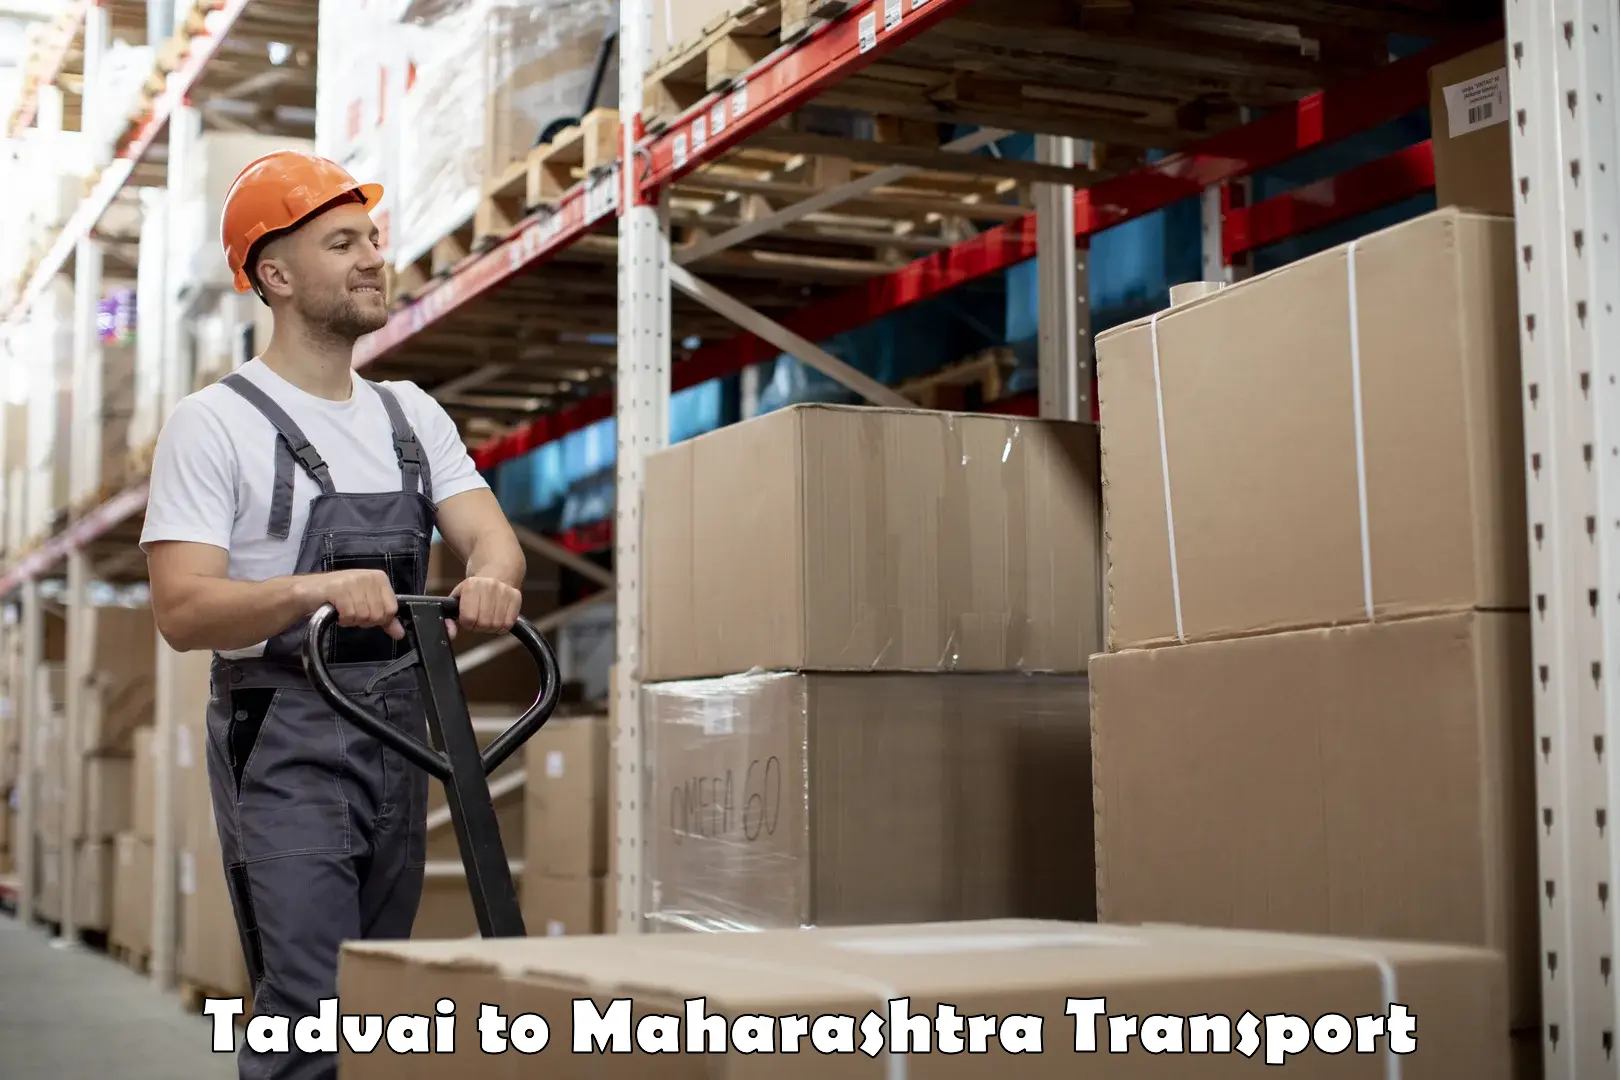 Furniture transport service Tadvai to Vairag